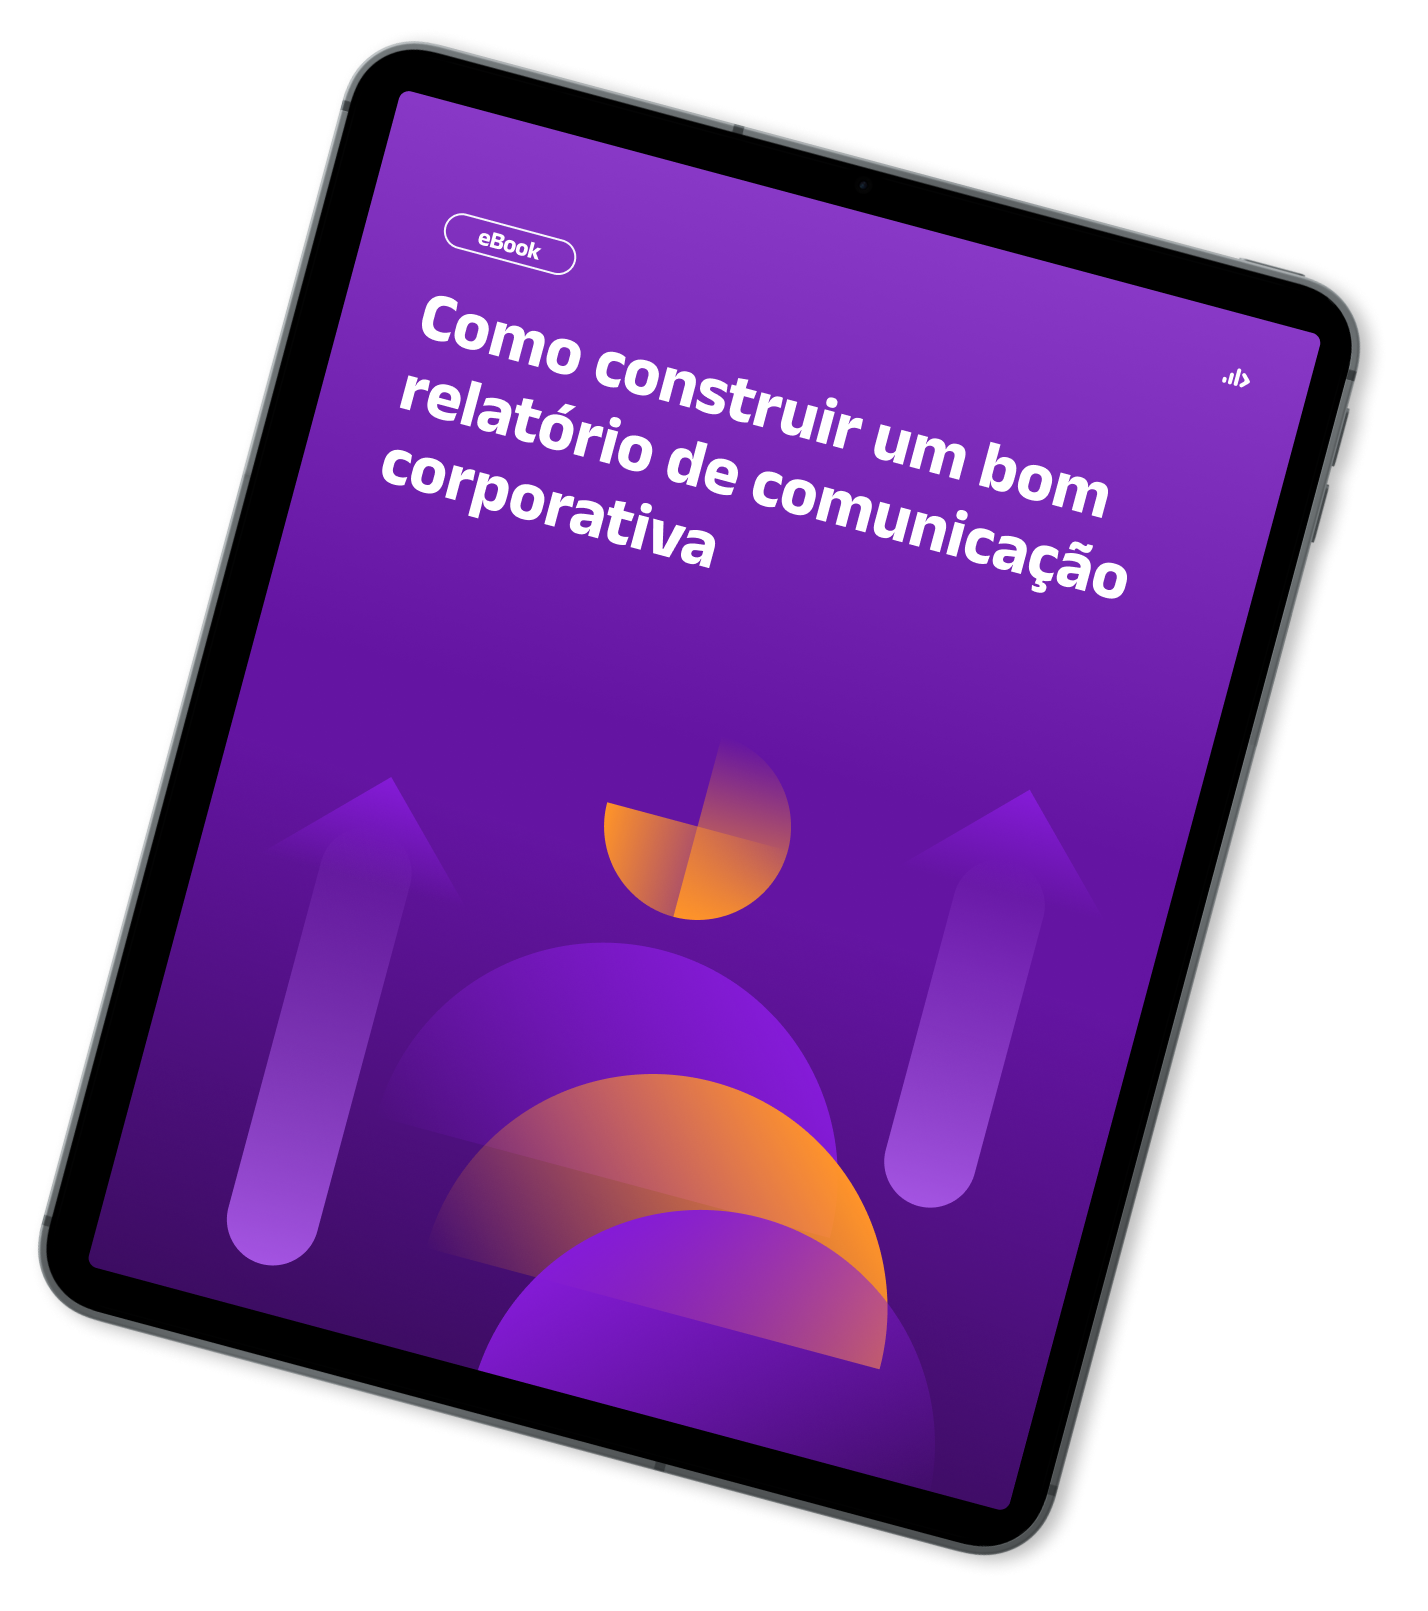 Mockup de Tablet com capa do Ebook - Como construir um bom relatório de comunicação corporativa